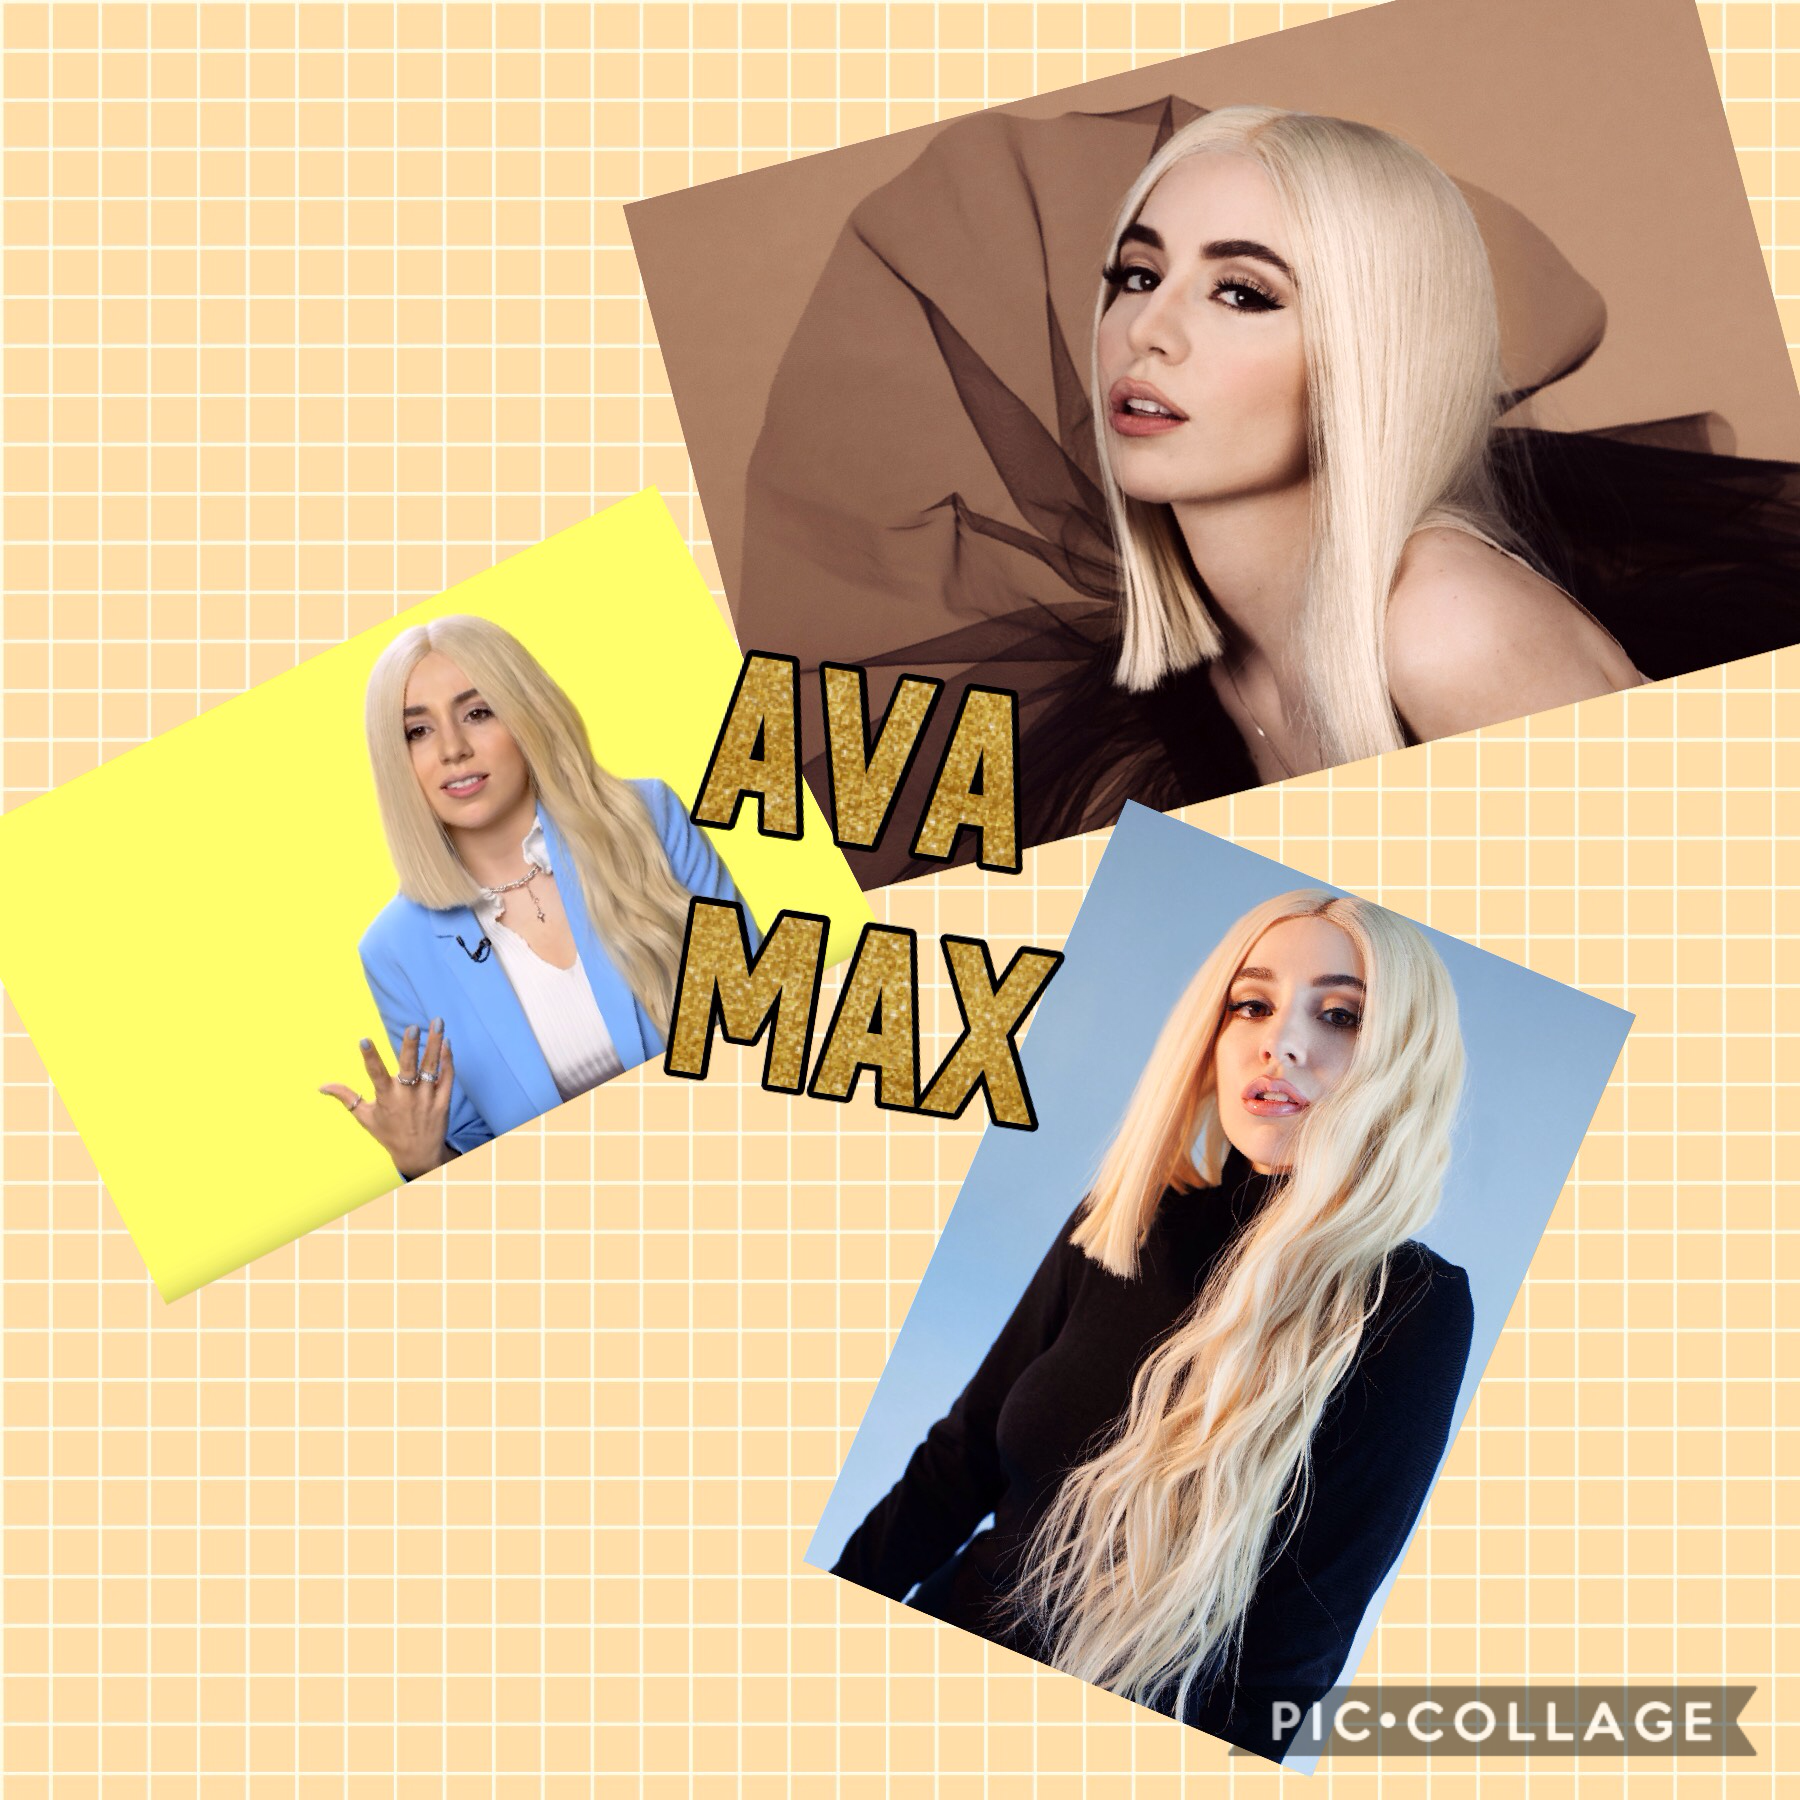 I love Ava Max